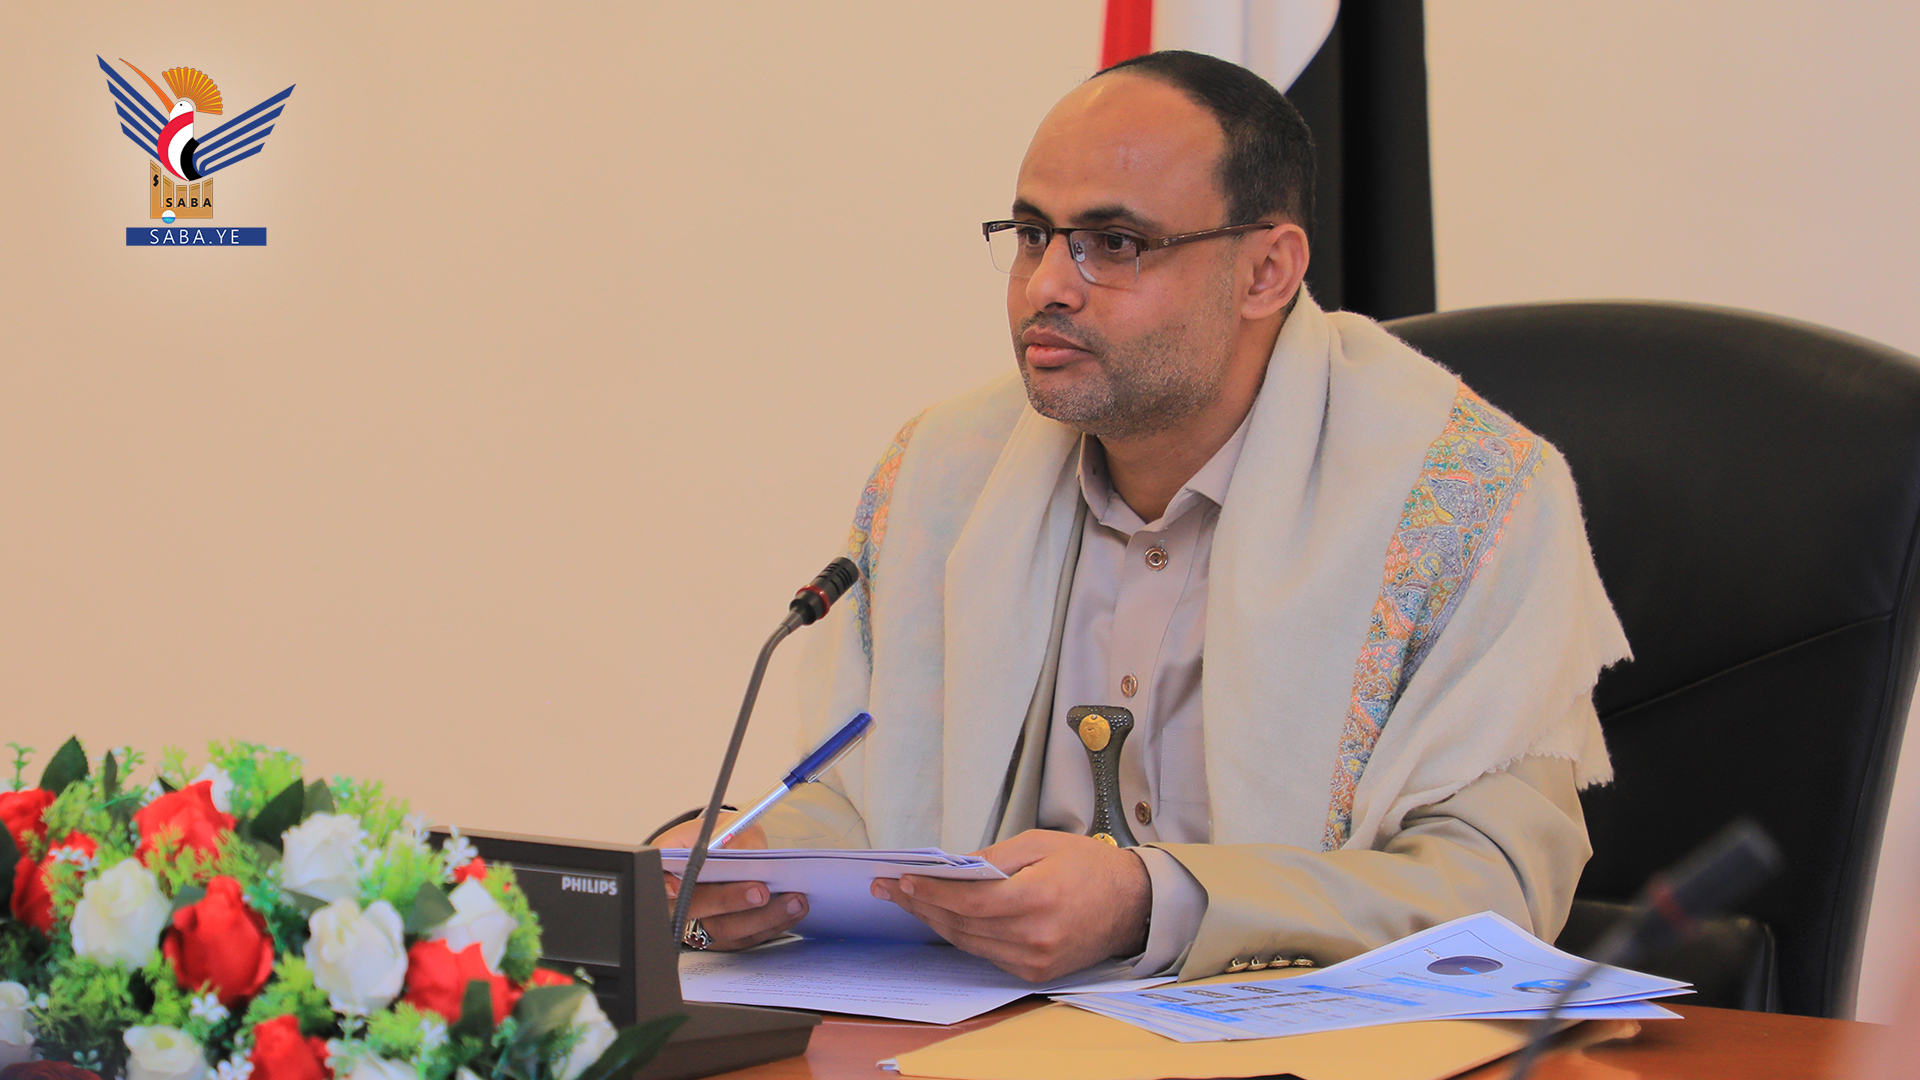 رئيس المجلس السياسي الأعلى التابع لجماعة "الحوثيين" في اليمن، مهدي المشاط (سبأ)